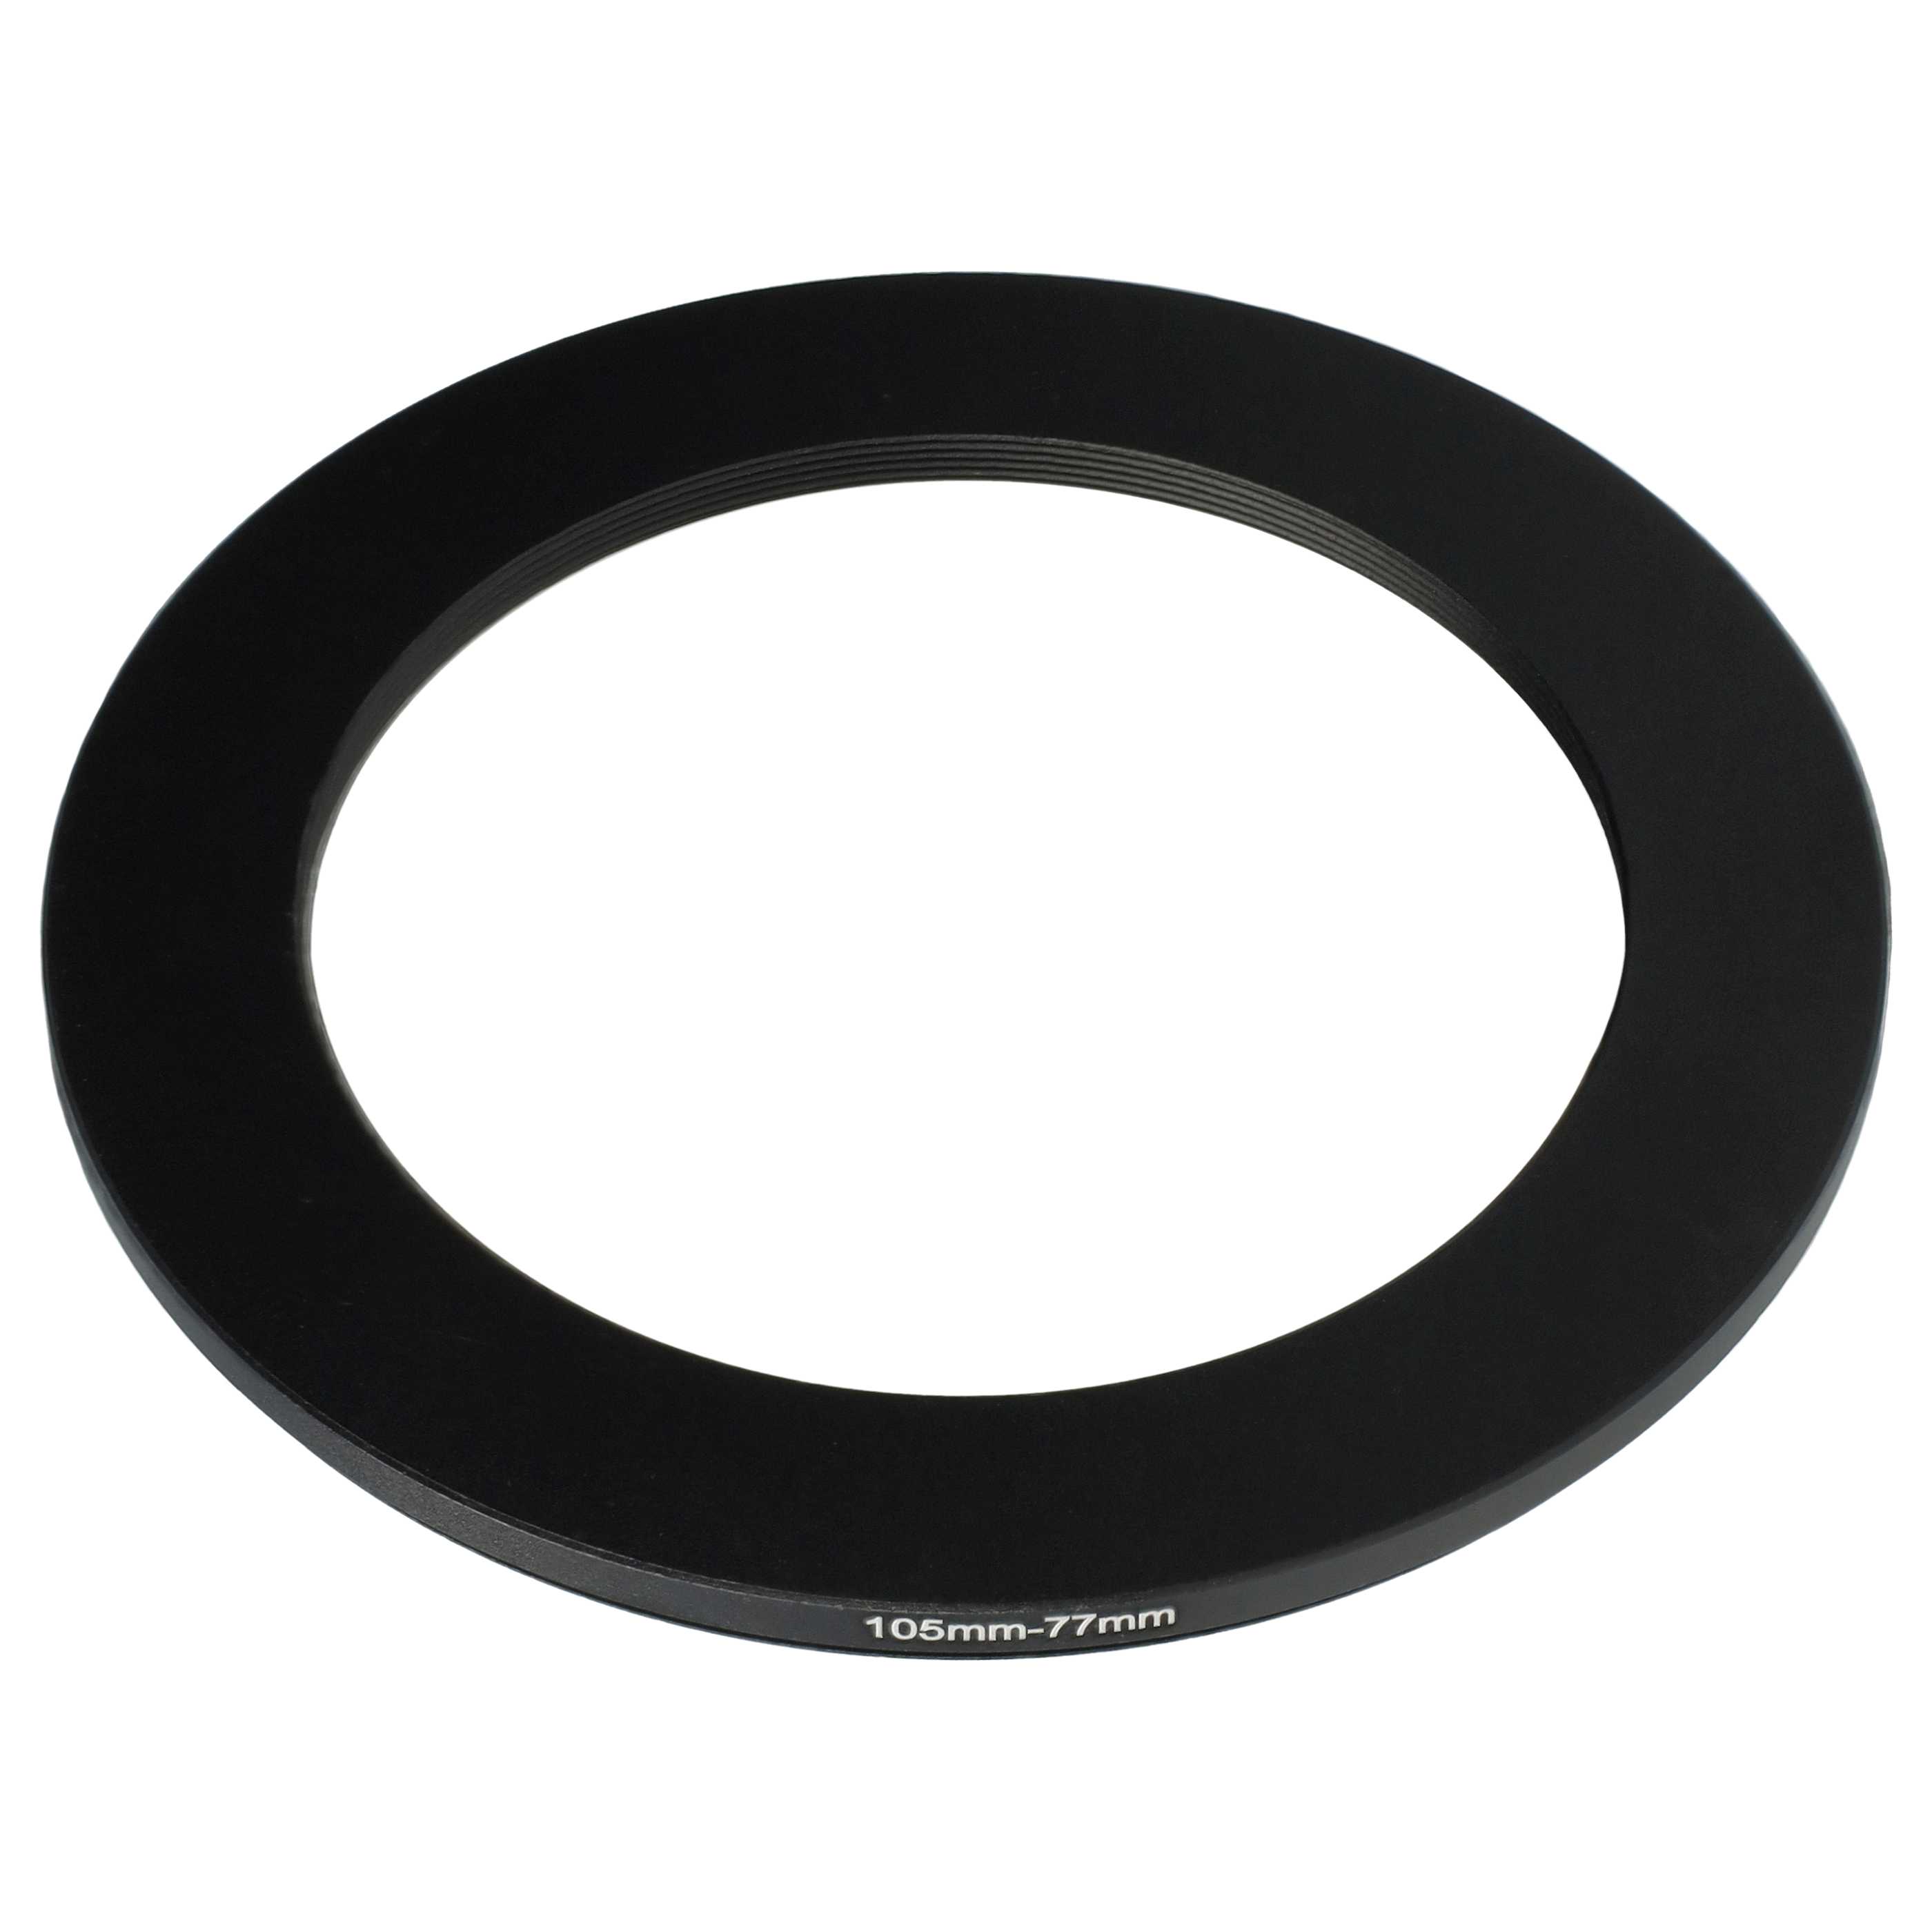 Anello adattatore step-down da 105 mm a 77 mm per obiettivo fotocamera - Adattatore filtro, metallo, nero